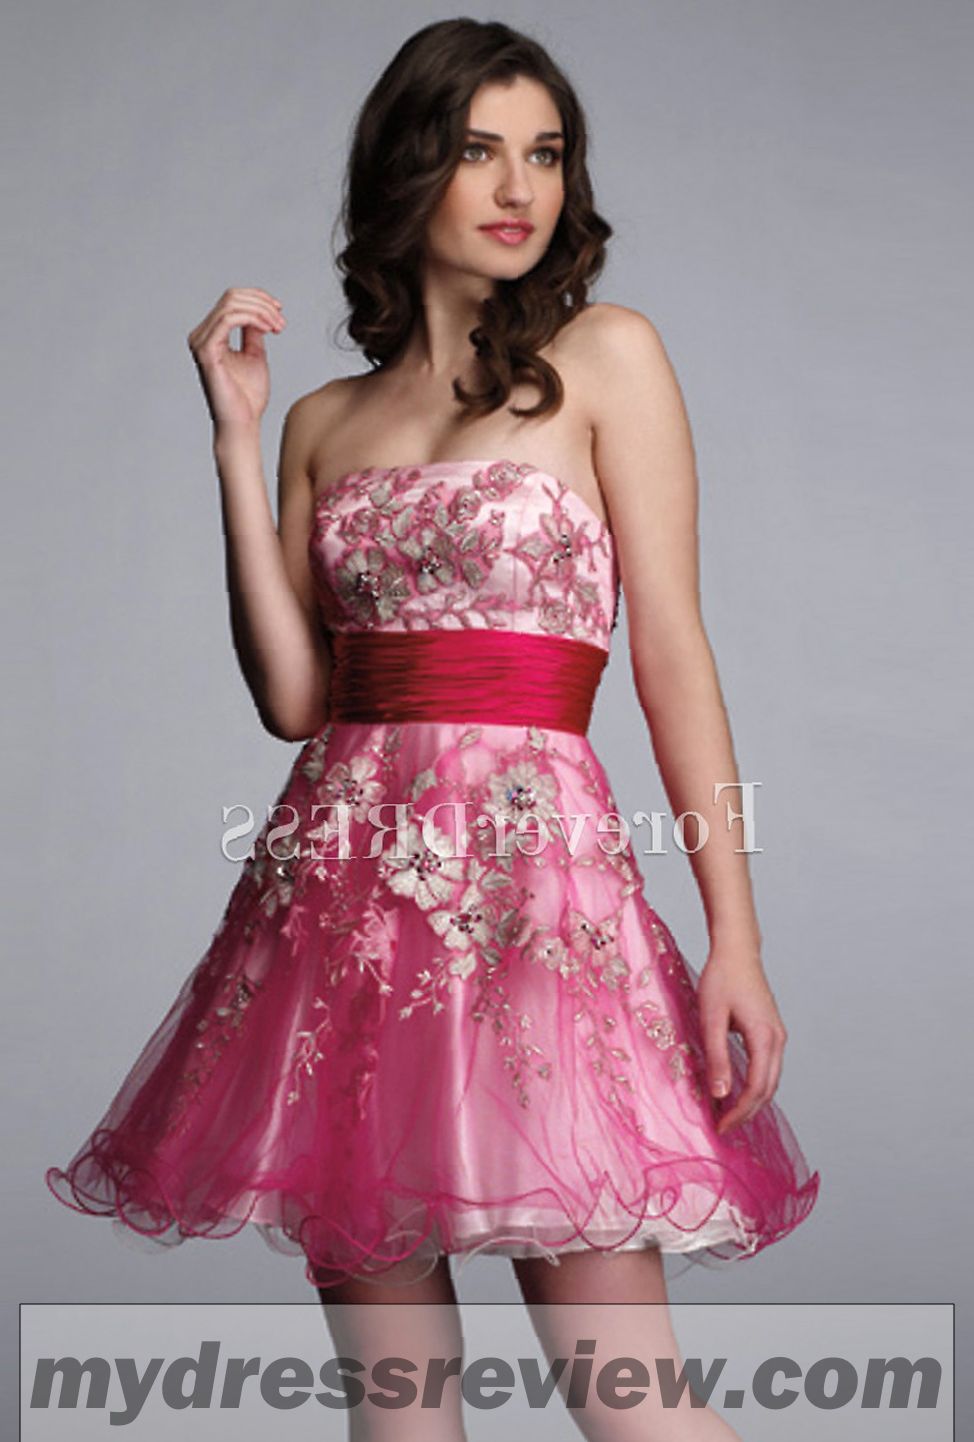 Formal Dress Shops Charlotte Nc - bestweddingdresses